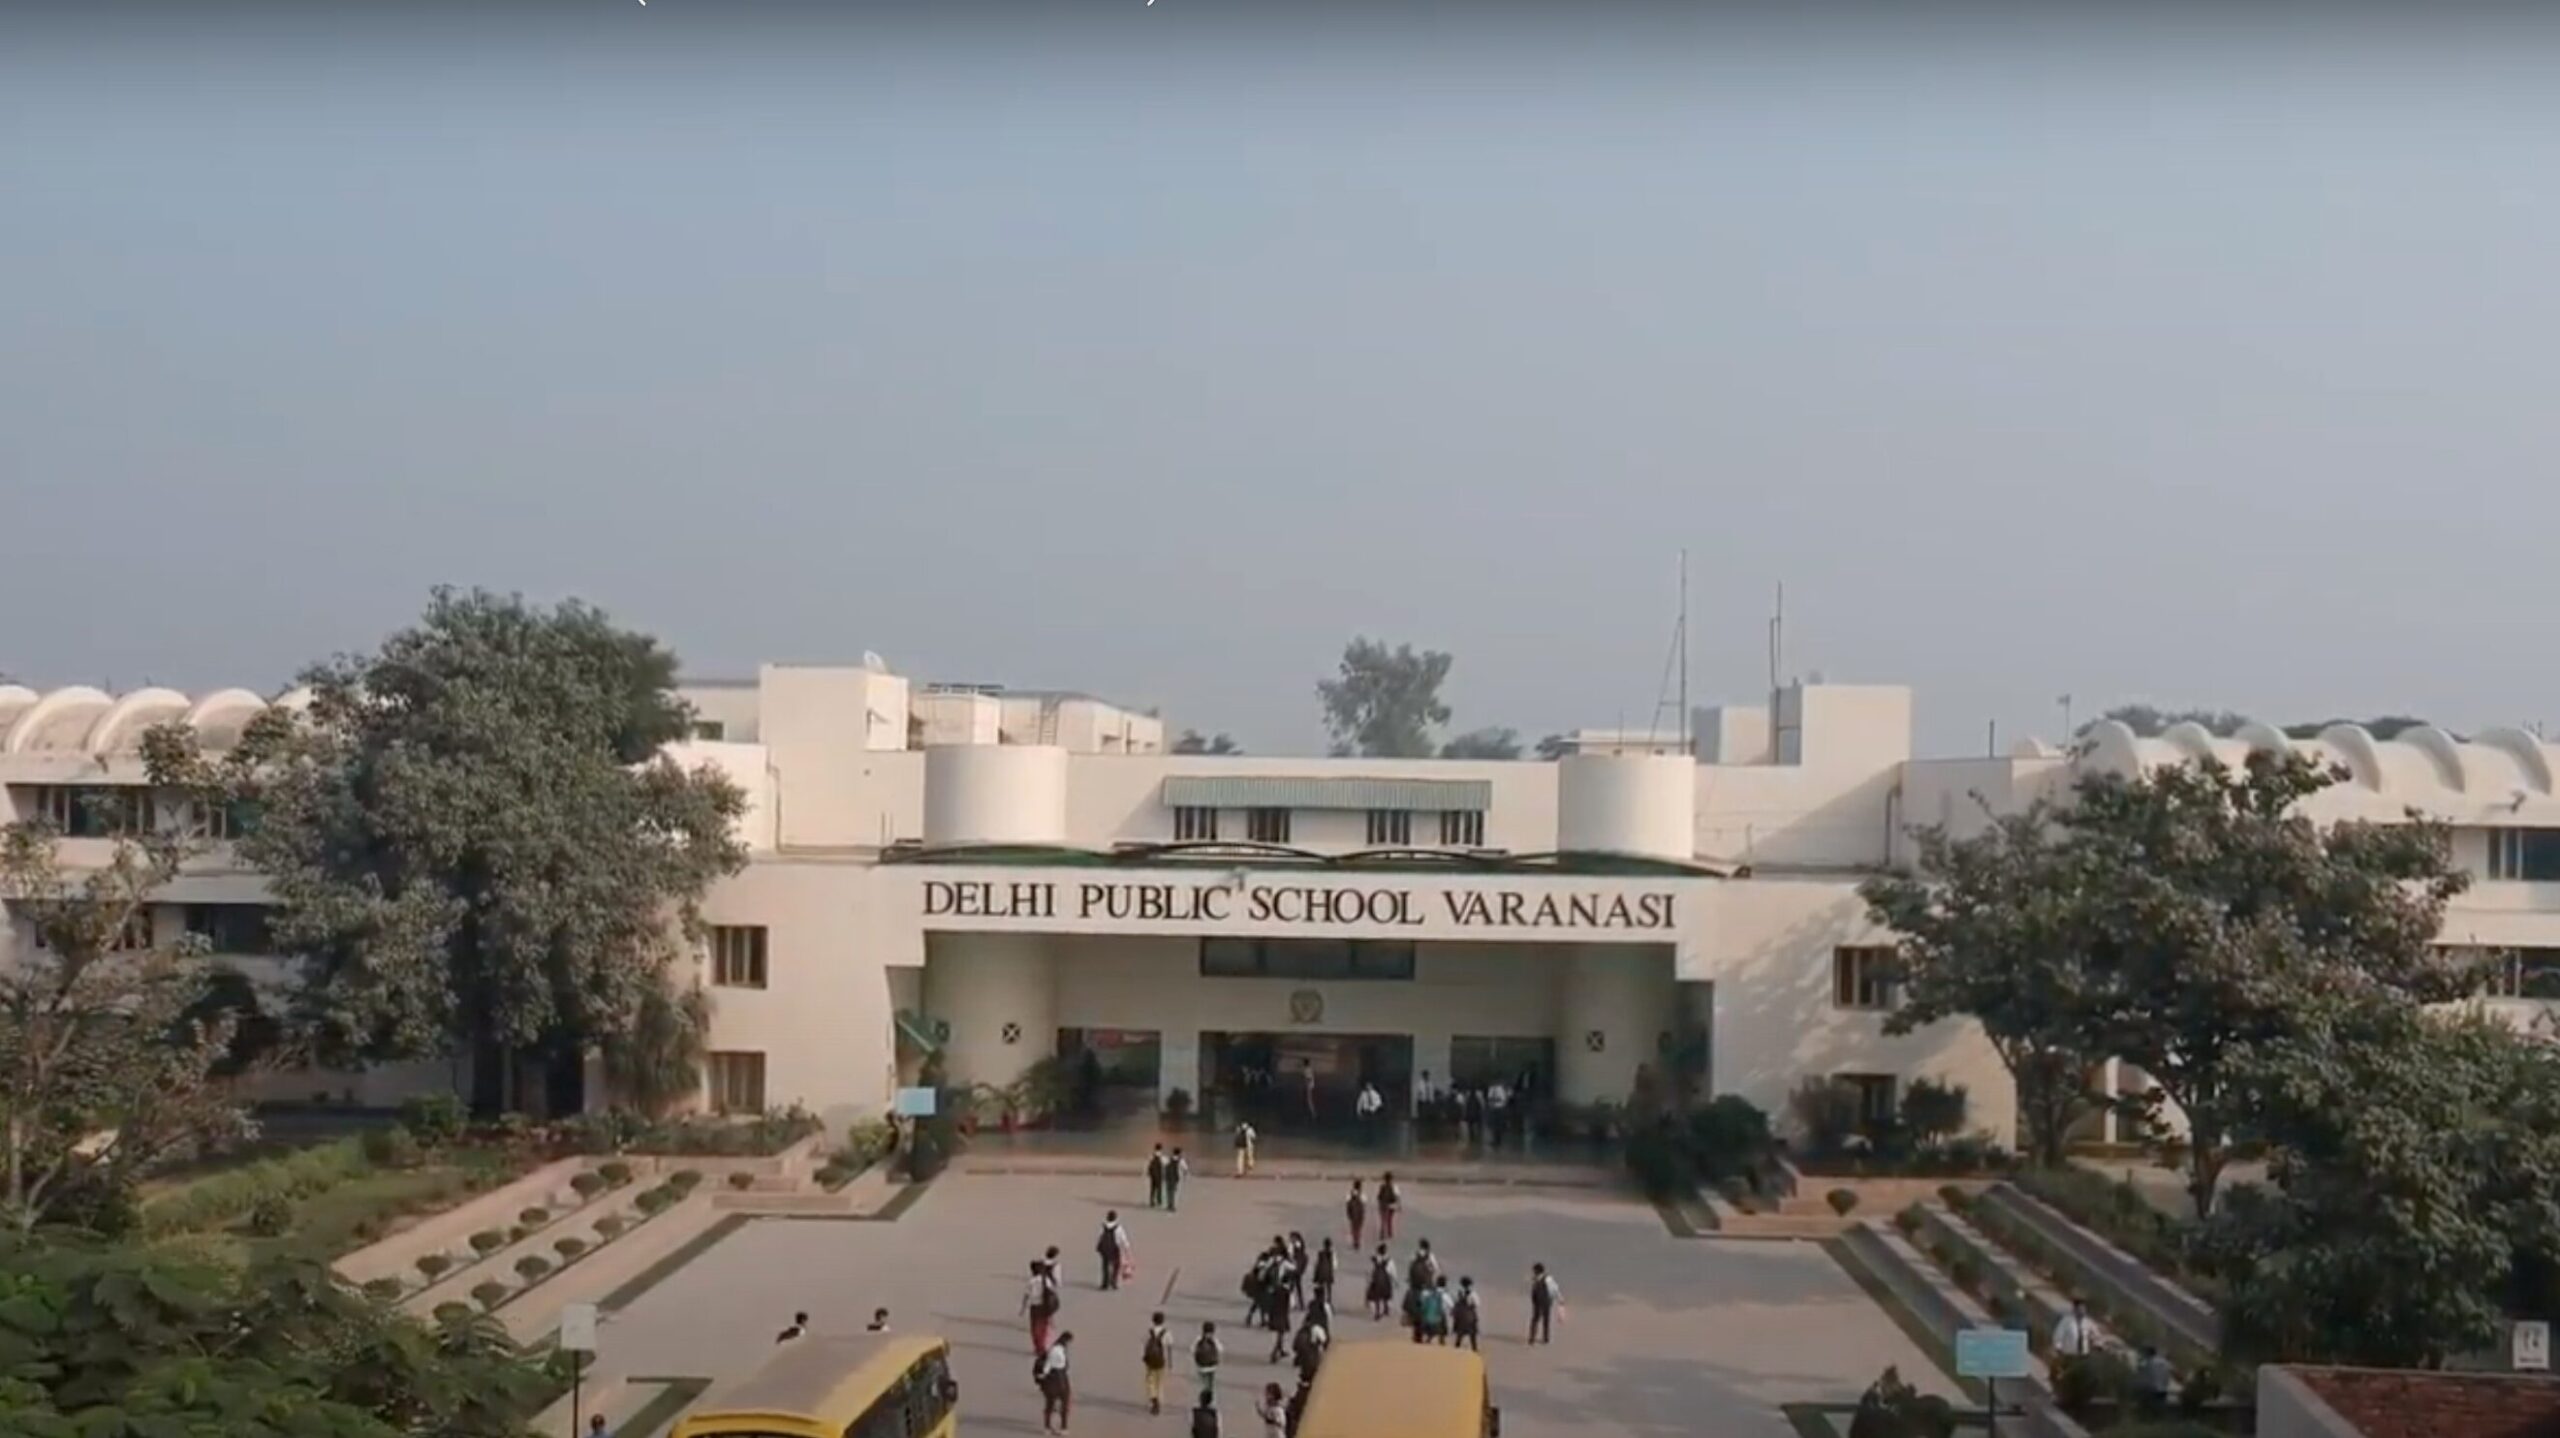 Delhi Public School Varanasi is one of the largest schools in Varanasi by campus area.